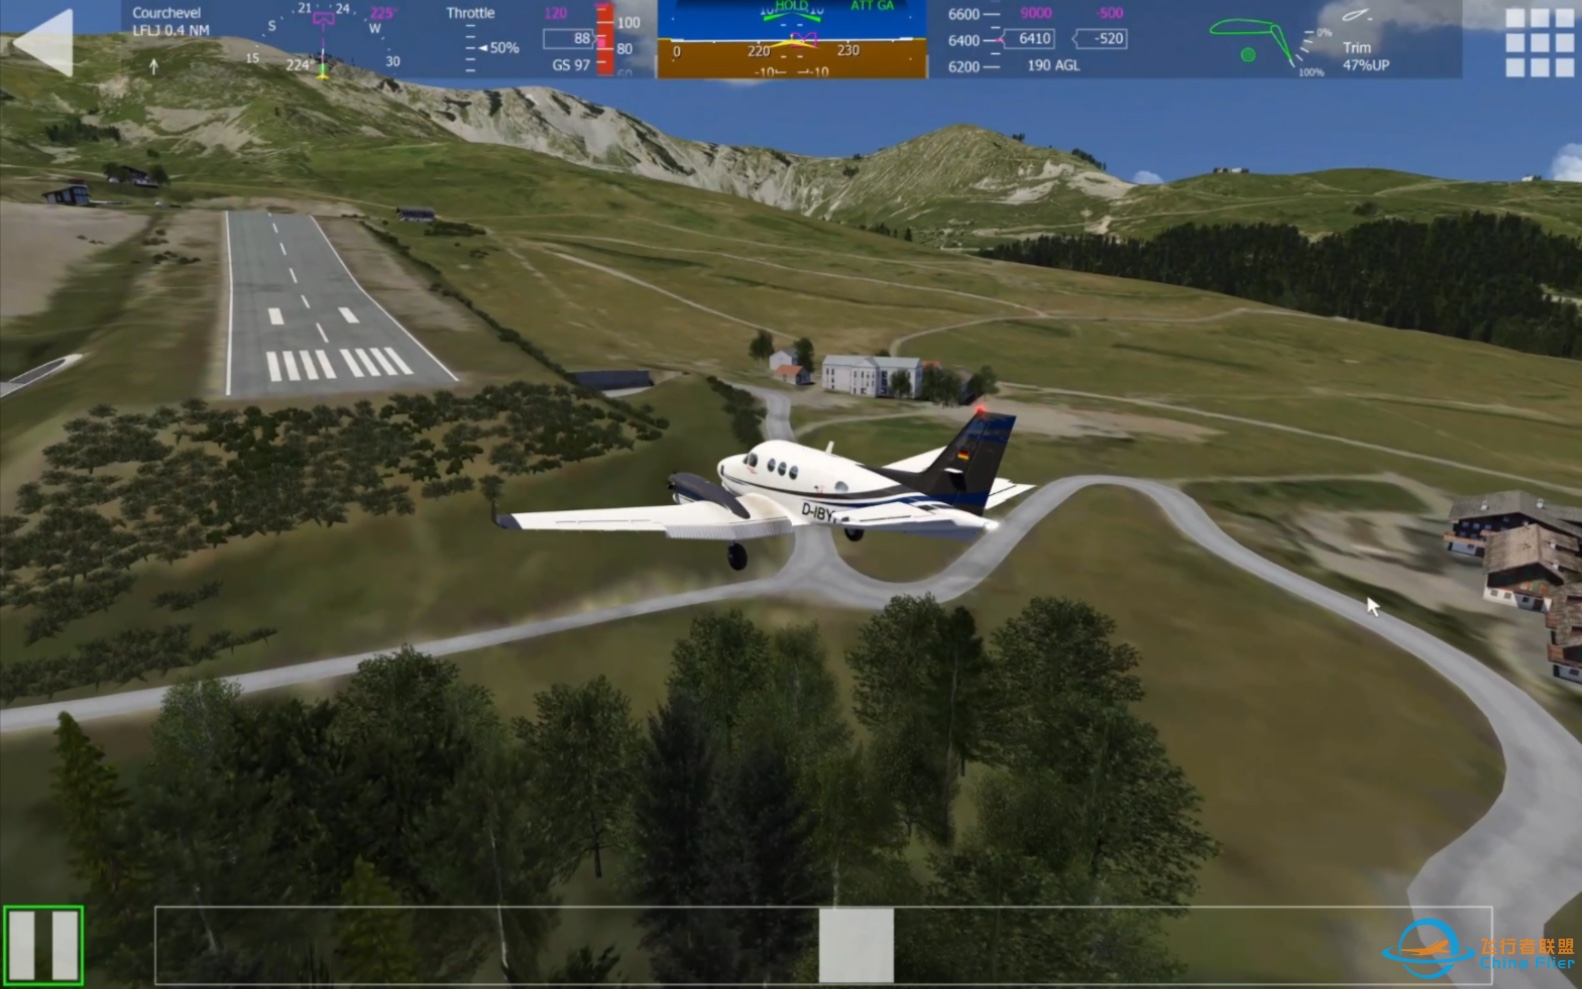 在经历无数次的尝试后终于成功在Aerofly驾驶King Air空中国王降落世界十大危险机场之一的机场—法国高雪维尔机场-5788 